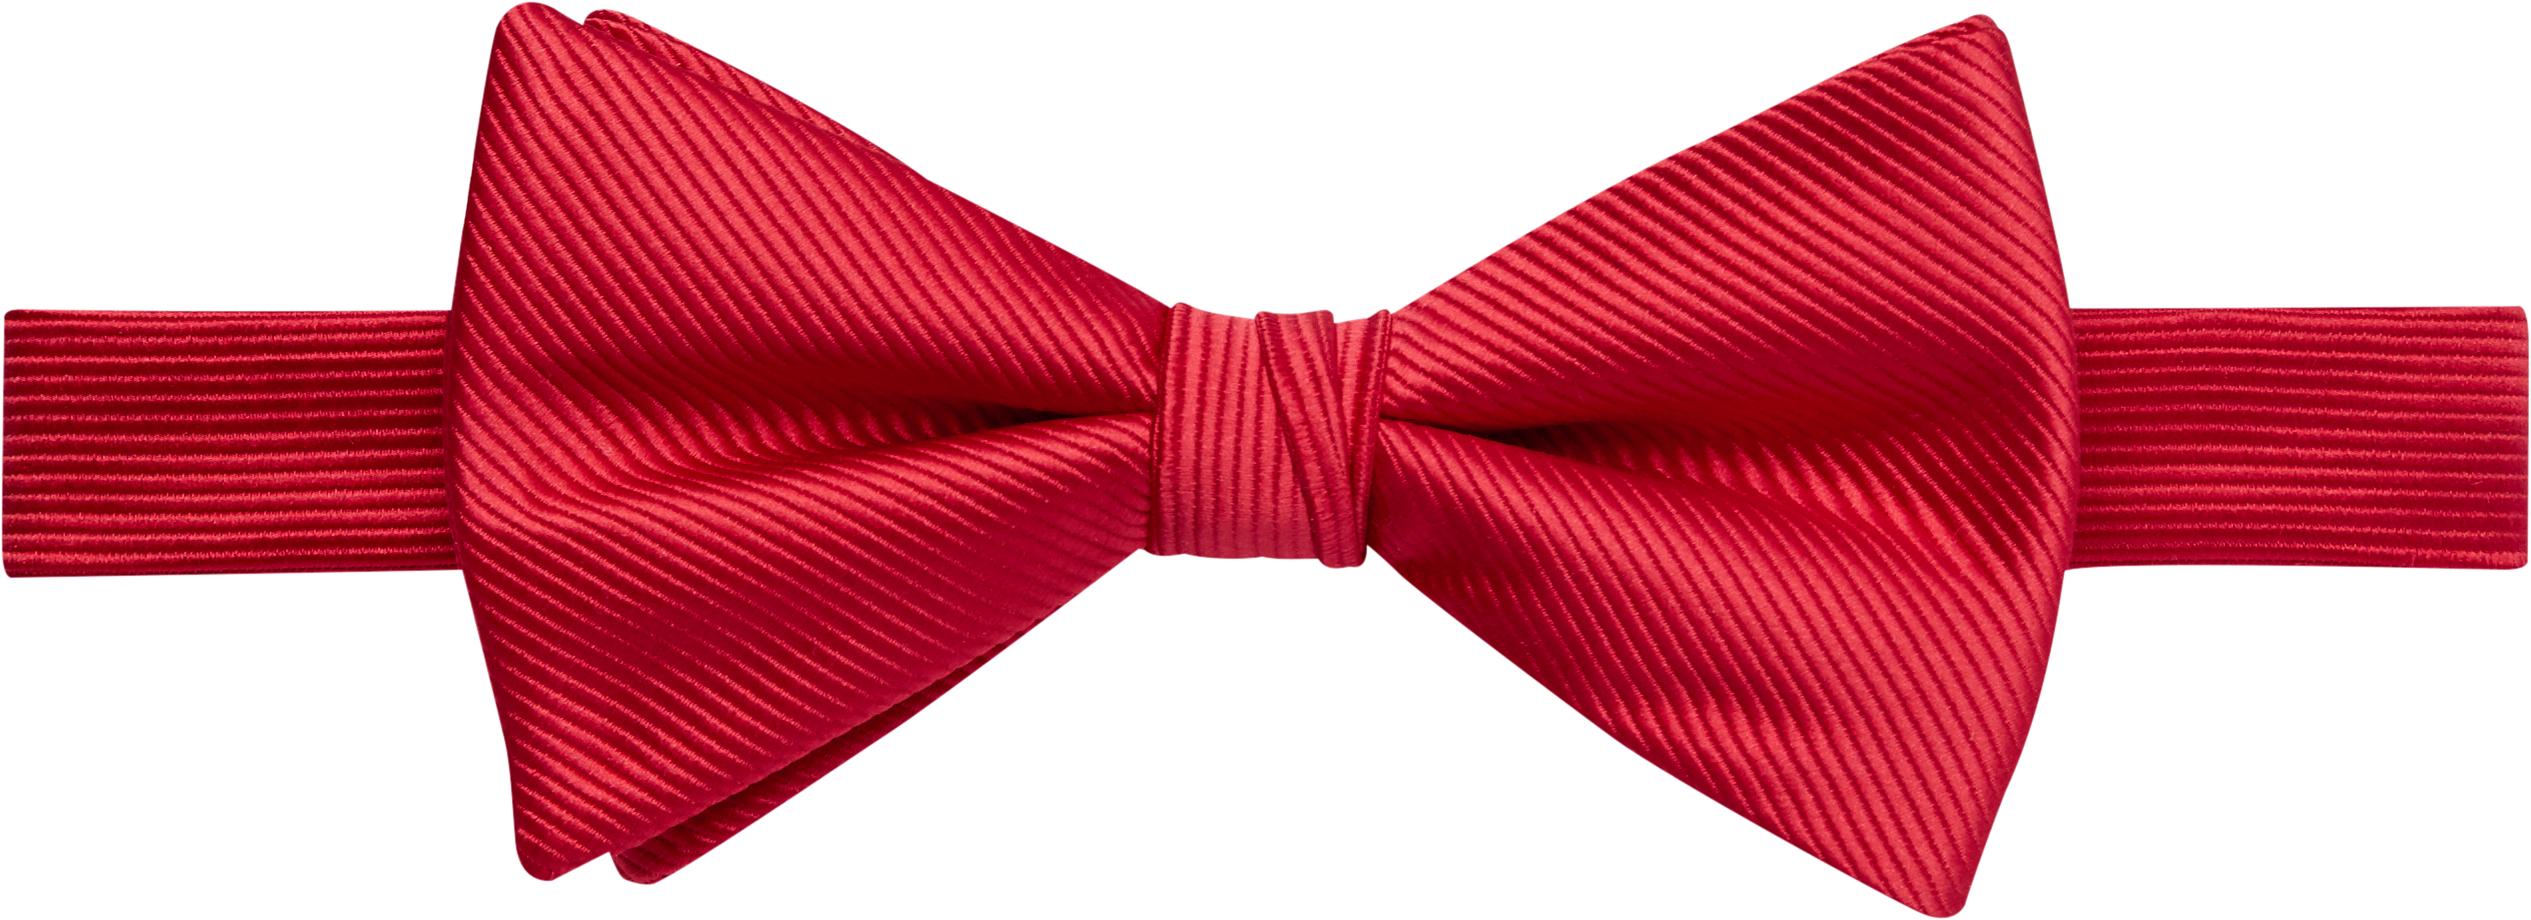 calvin klein red tie